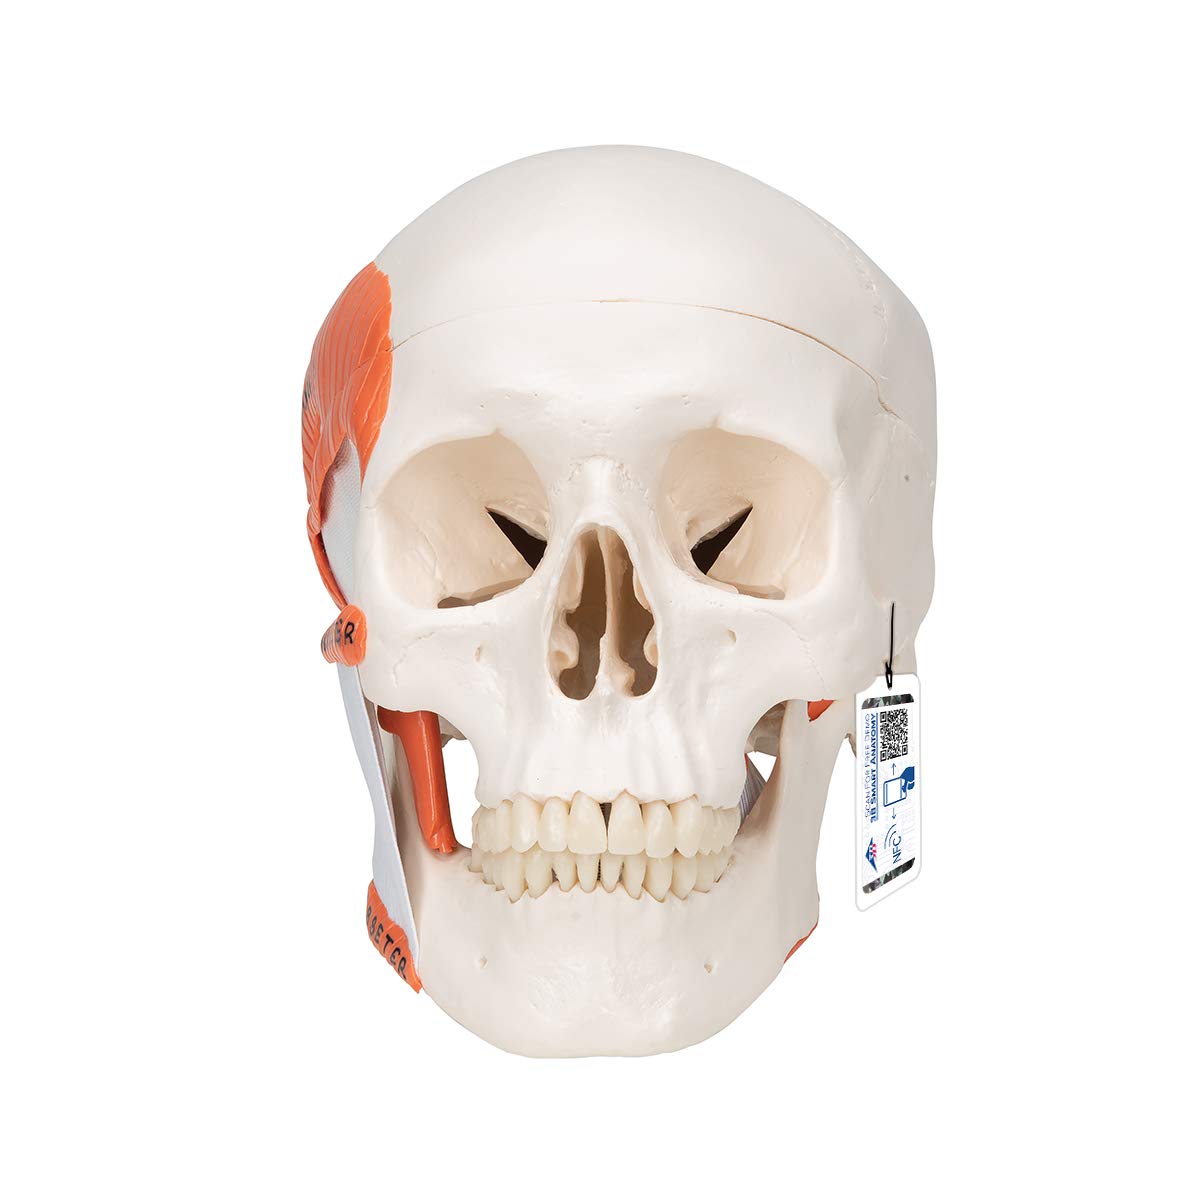 3B Scientific Menschliche Anatomie - Funktionales Schädel Modell mit Kaumuskulatur, 2-teilig + kostenlose Anatomie App - 3B Smart Anatomy, A24